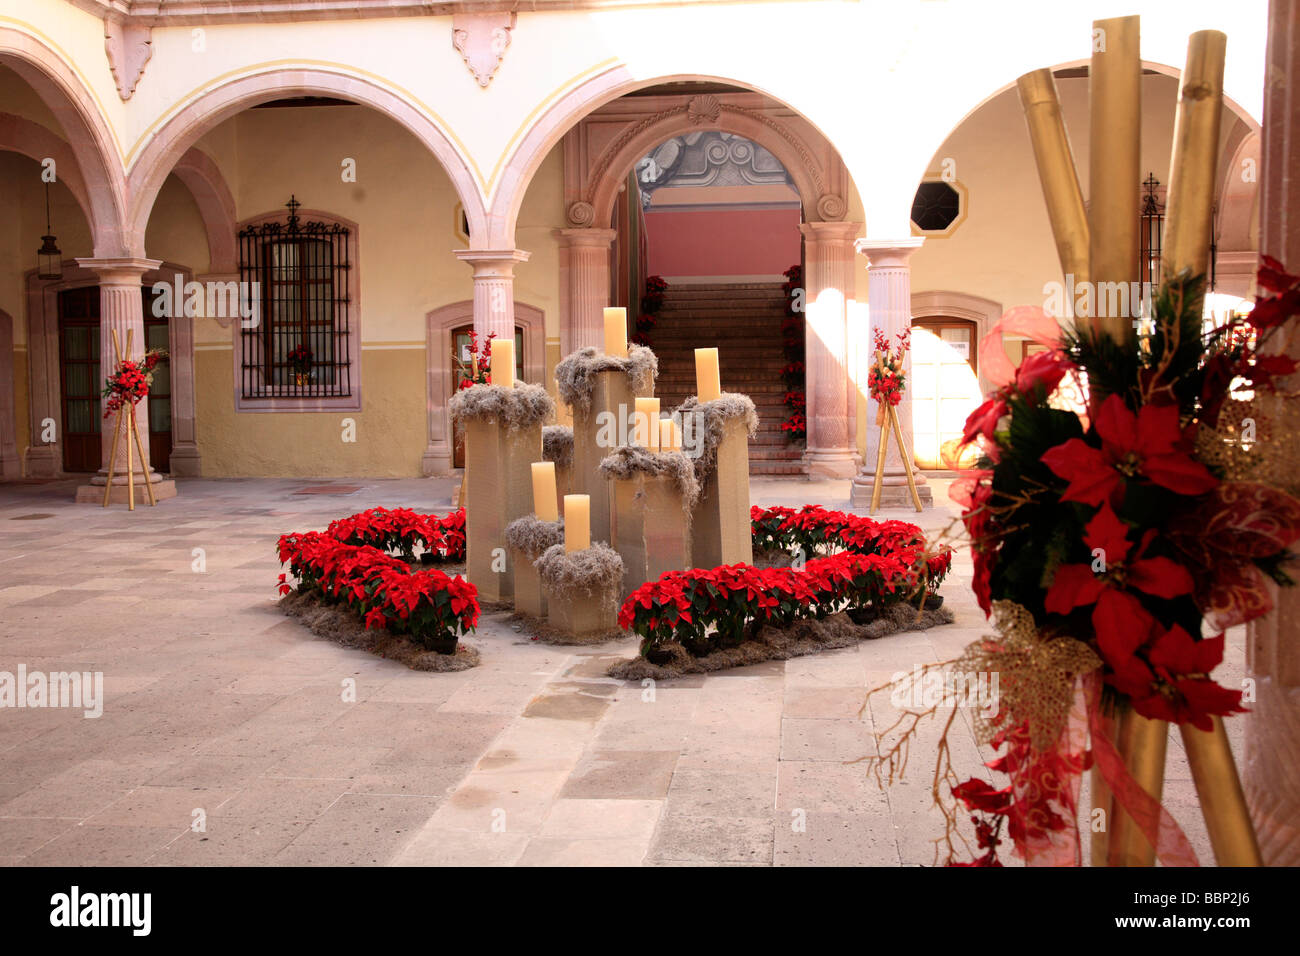 Zacatecas città messicana architettura coloniale della vigilia di natale decorazione candele pittoresco edificio goberment messico viaggi Foto Stock